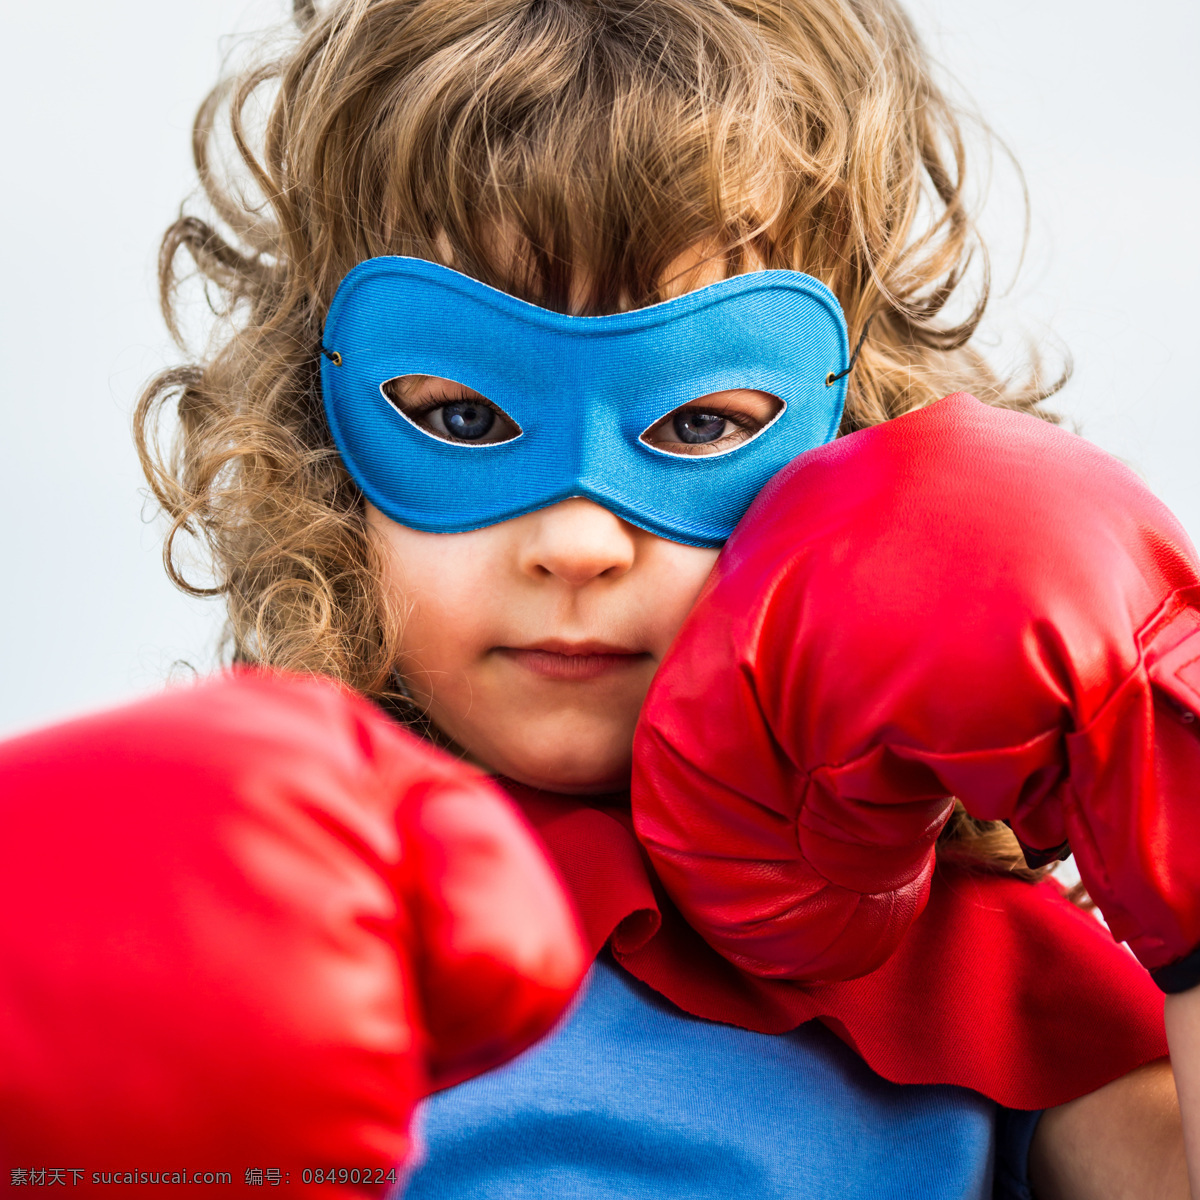 打拳 击 儿童 运动 拳击 戴面具的超人 小英雄 超级英雄 外国男孩 小男孩 儿童超人 披风 儿童图片 人物图片